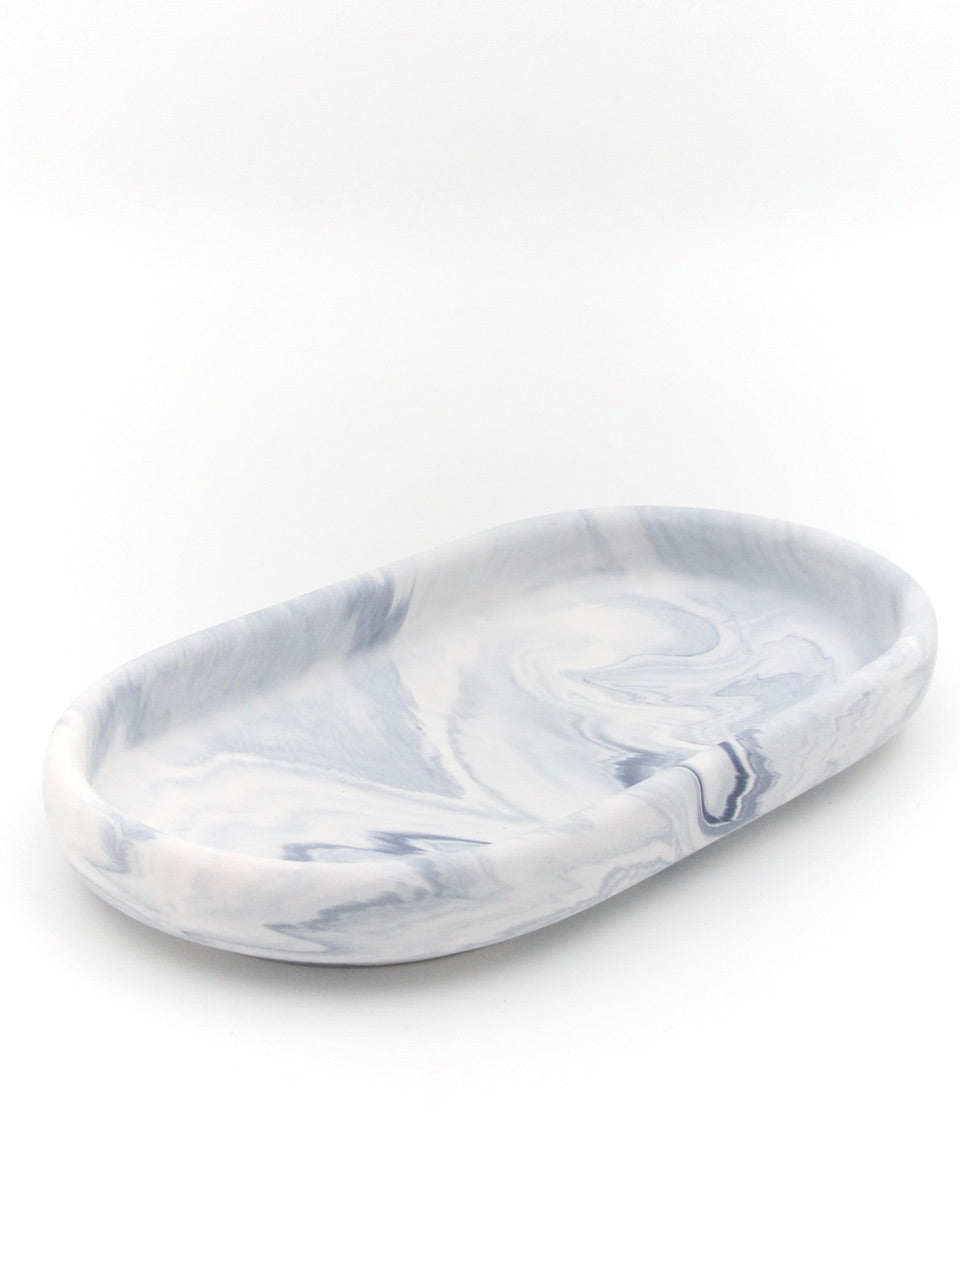 Dekorationsbakke - Blå/Grå marmor